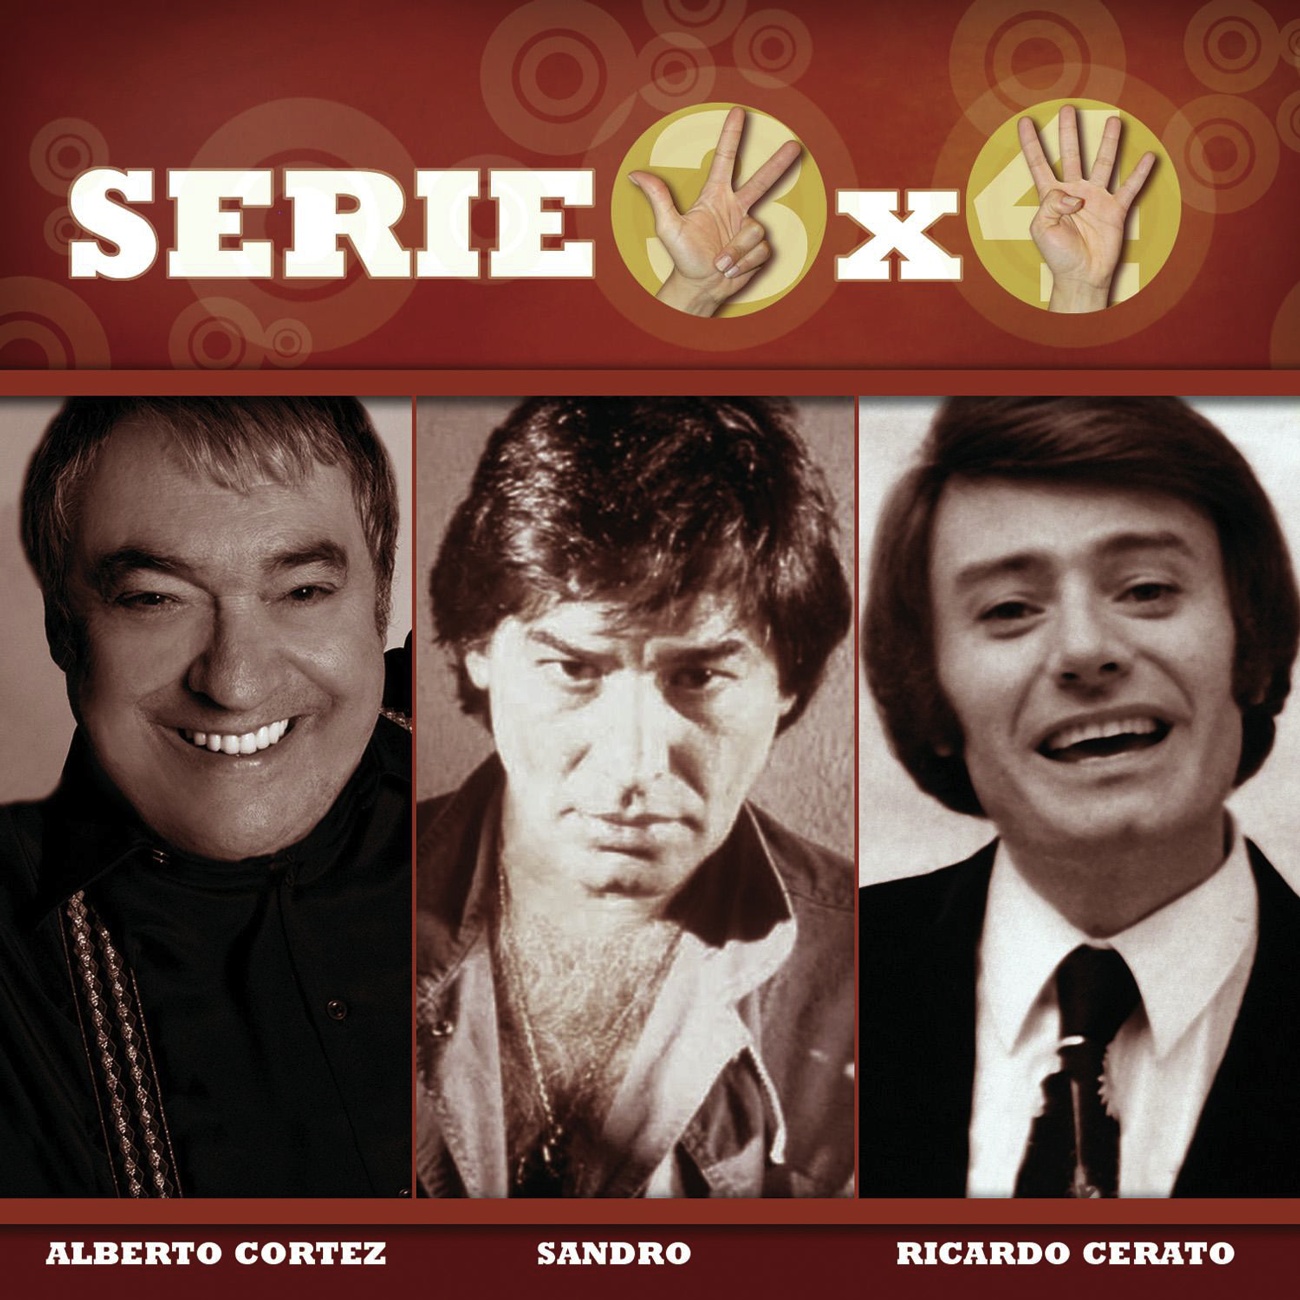 Serie 3x4 (Alberto Cortez, Sandro, Ricardo Ceratto)